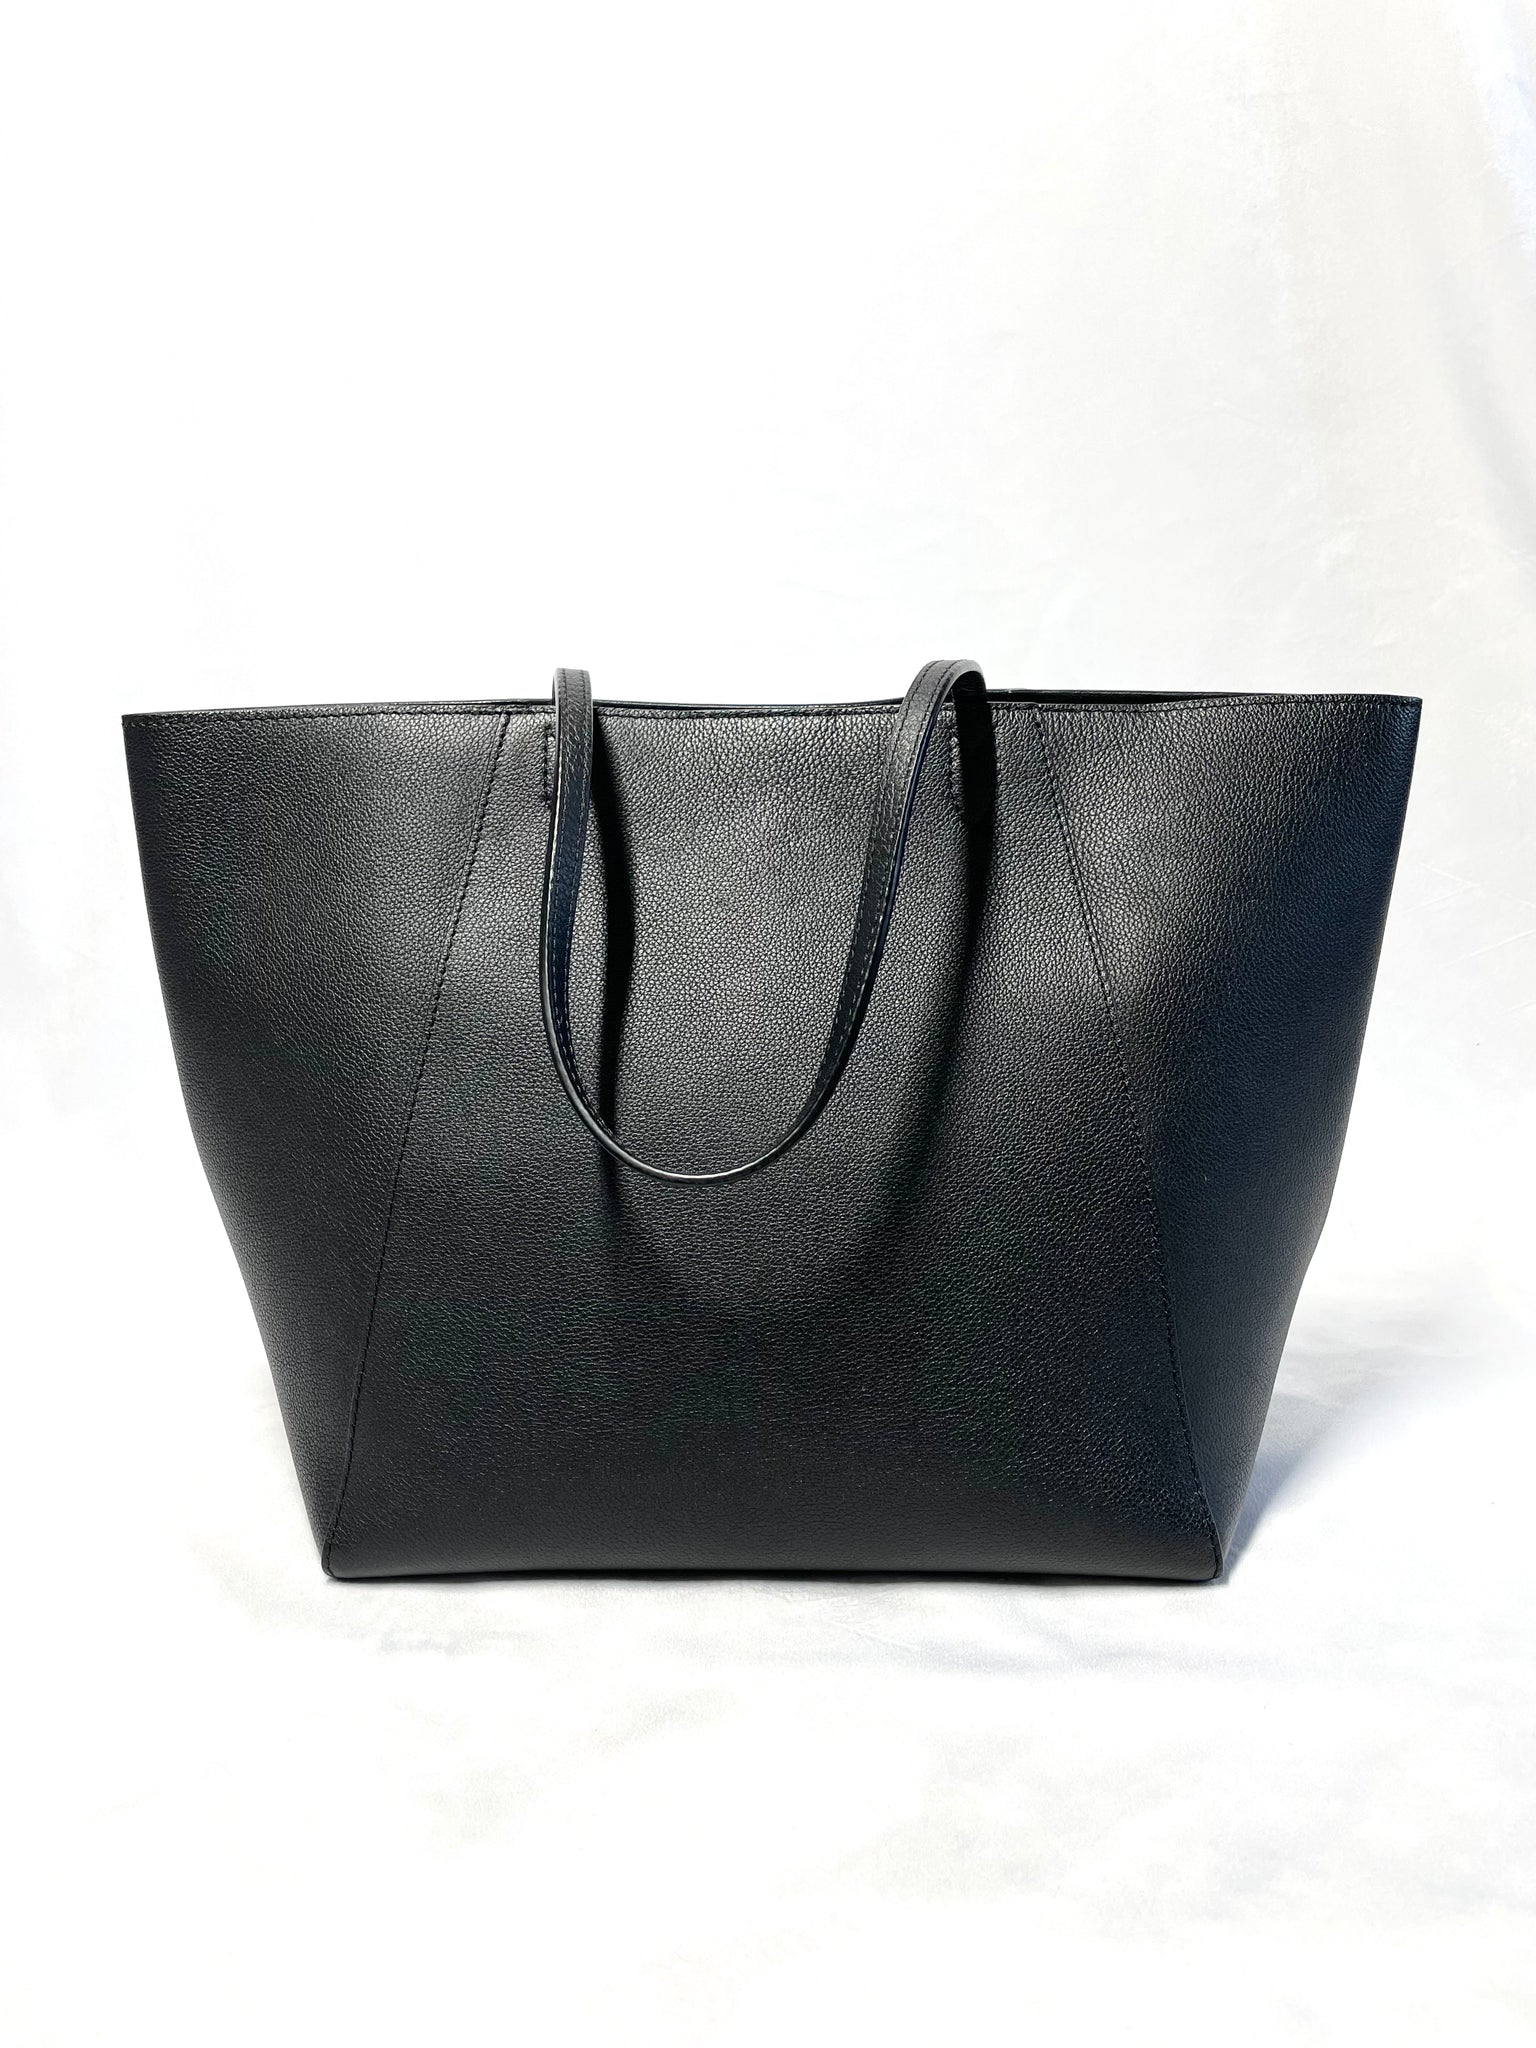 LOUIS VUITTON Lockme Cabas Calfskin Leather Shoulder Bag Black-US